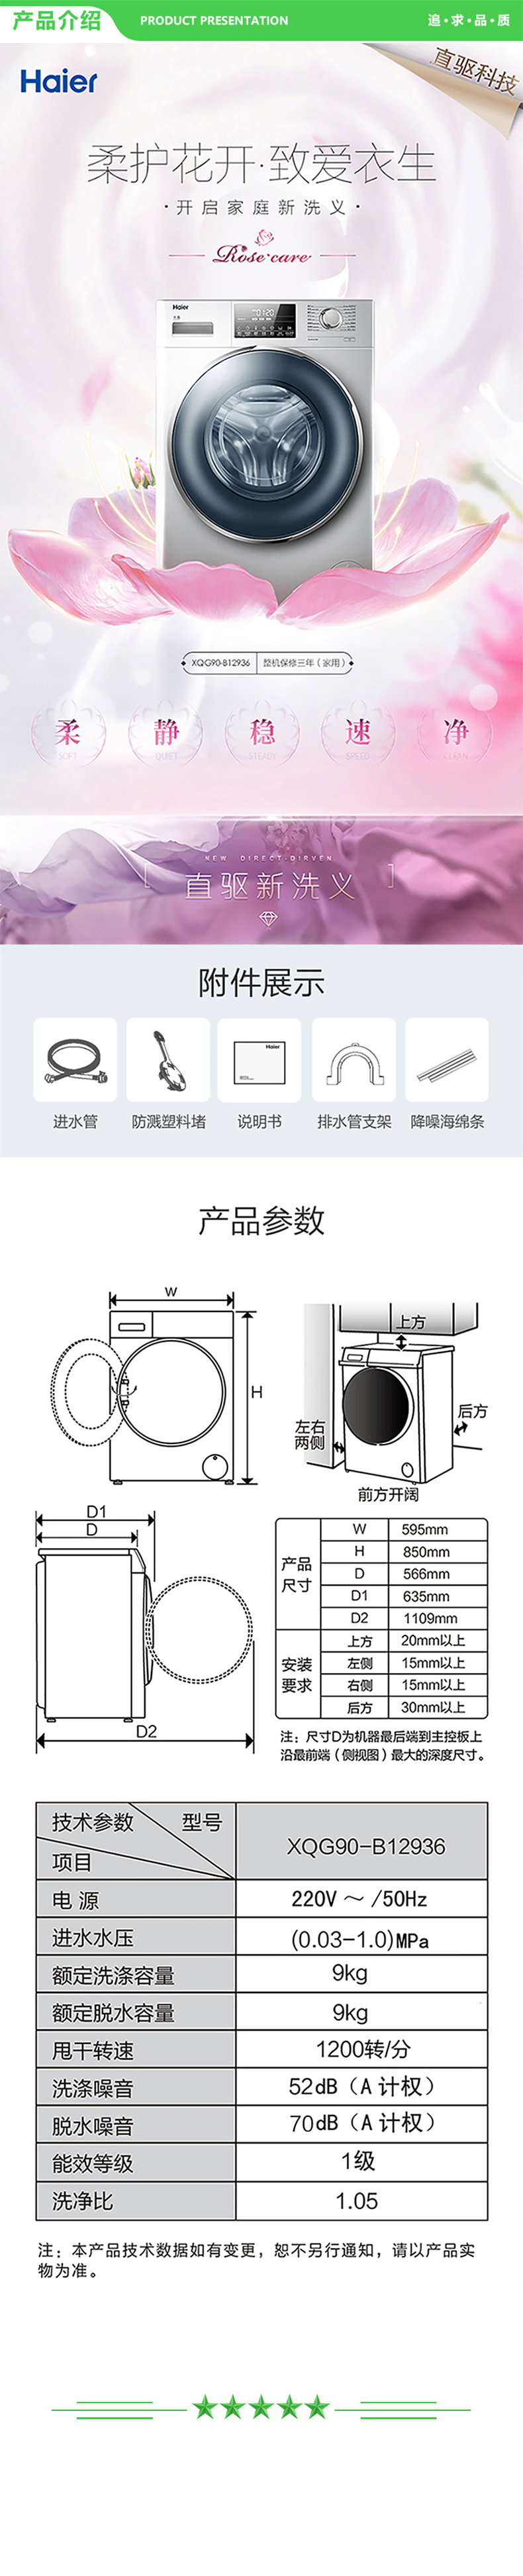 海尔 Haier XQG90-B12936  9KG滚筒洗衣机 直驱变频 全自动 摇篮柔洗 筒自洁   .jpg